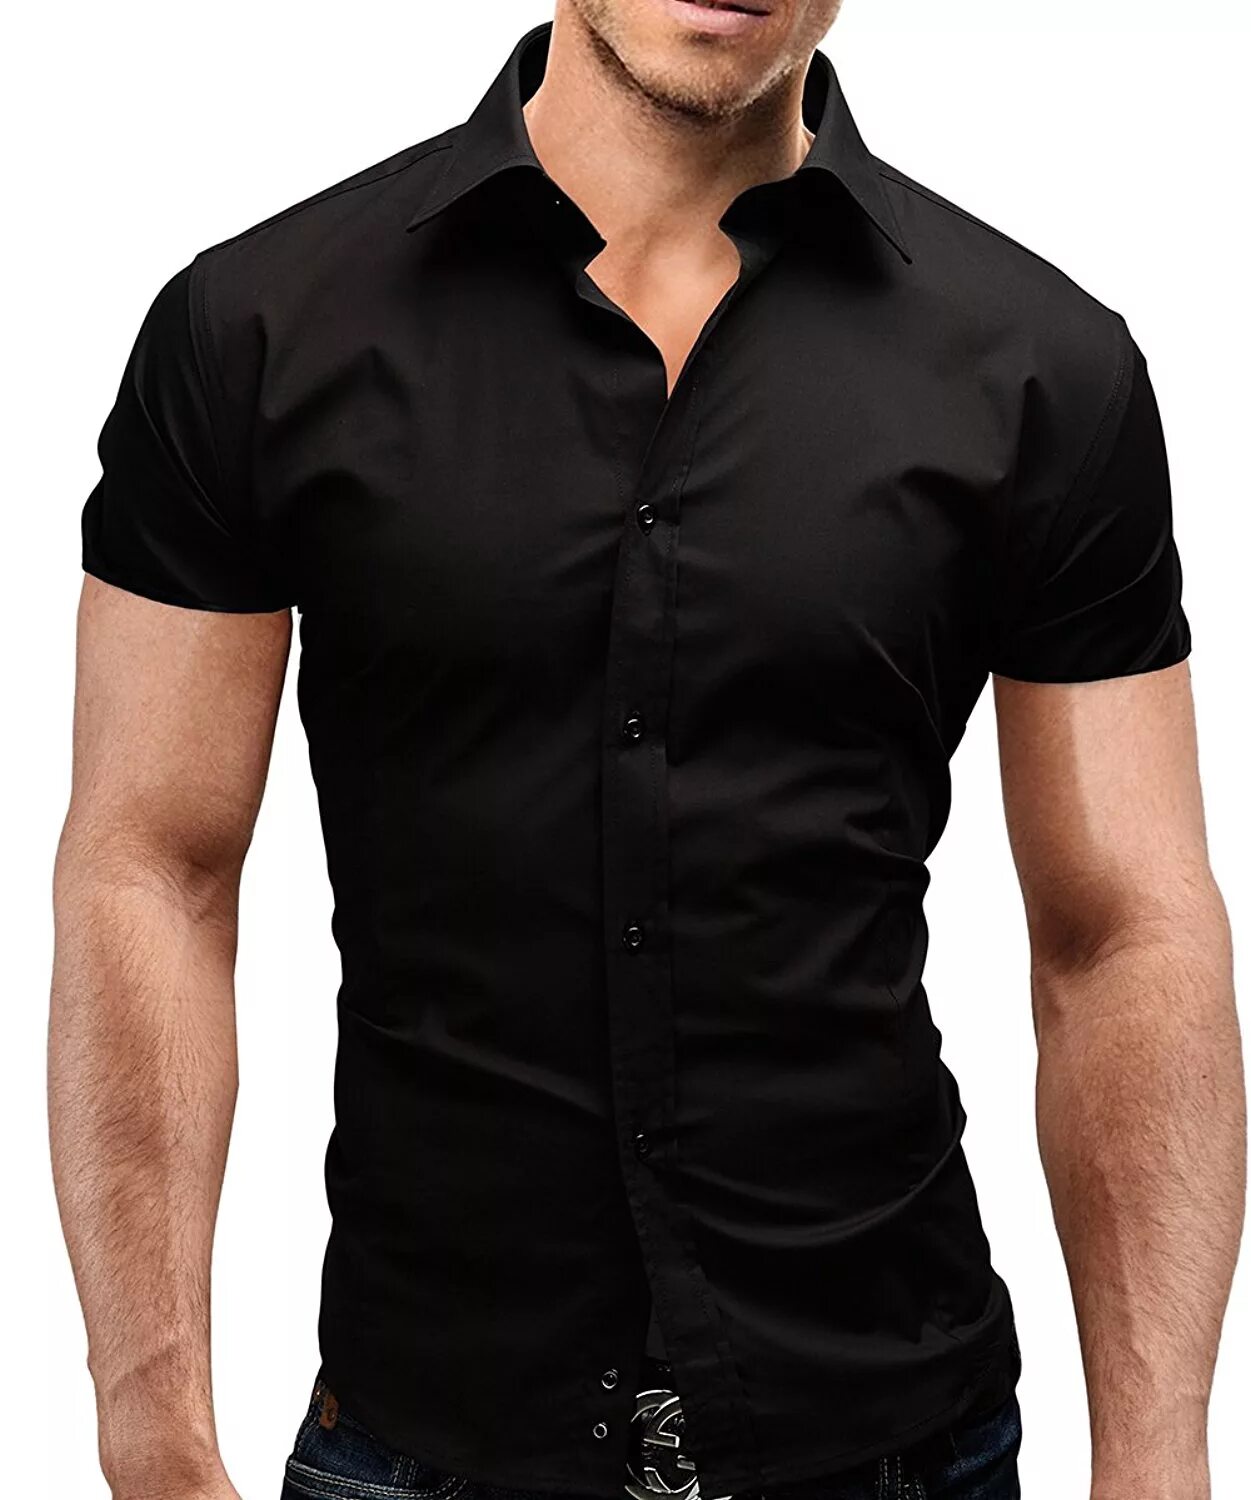 Черная рубашка. Рубашка мужская. Черная рубашка с коротким рукавом. Рубашки мужские с коротким рукавом модные.